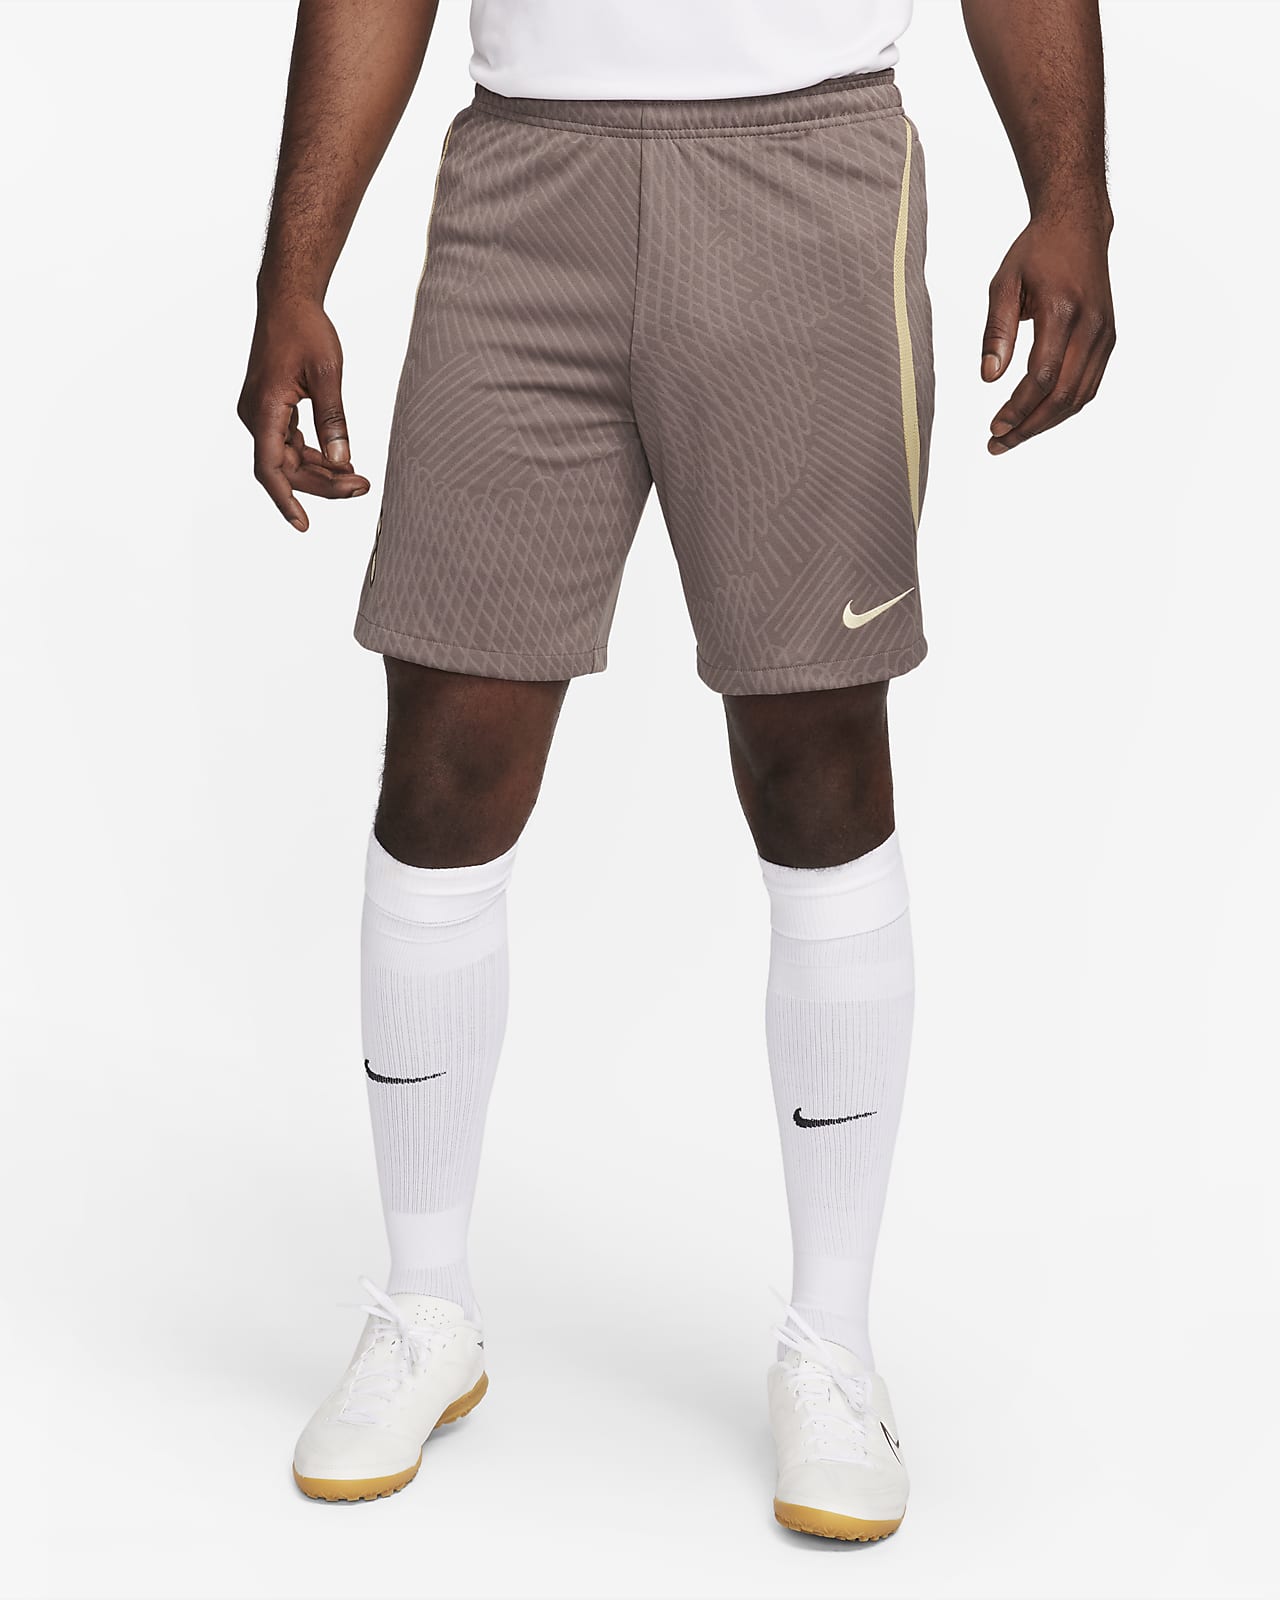 Ανδρικό ποδοσφαιρικό πλεκτό σορτς Nike Dri-FIT εναλλακτικής εμφάνισης Τότεναμ Strike